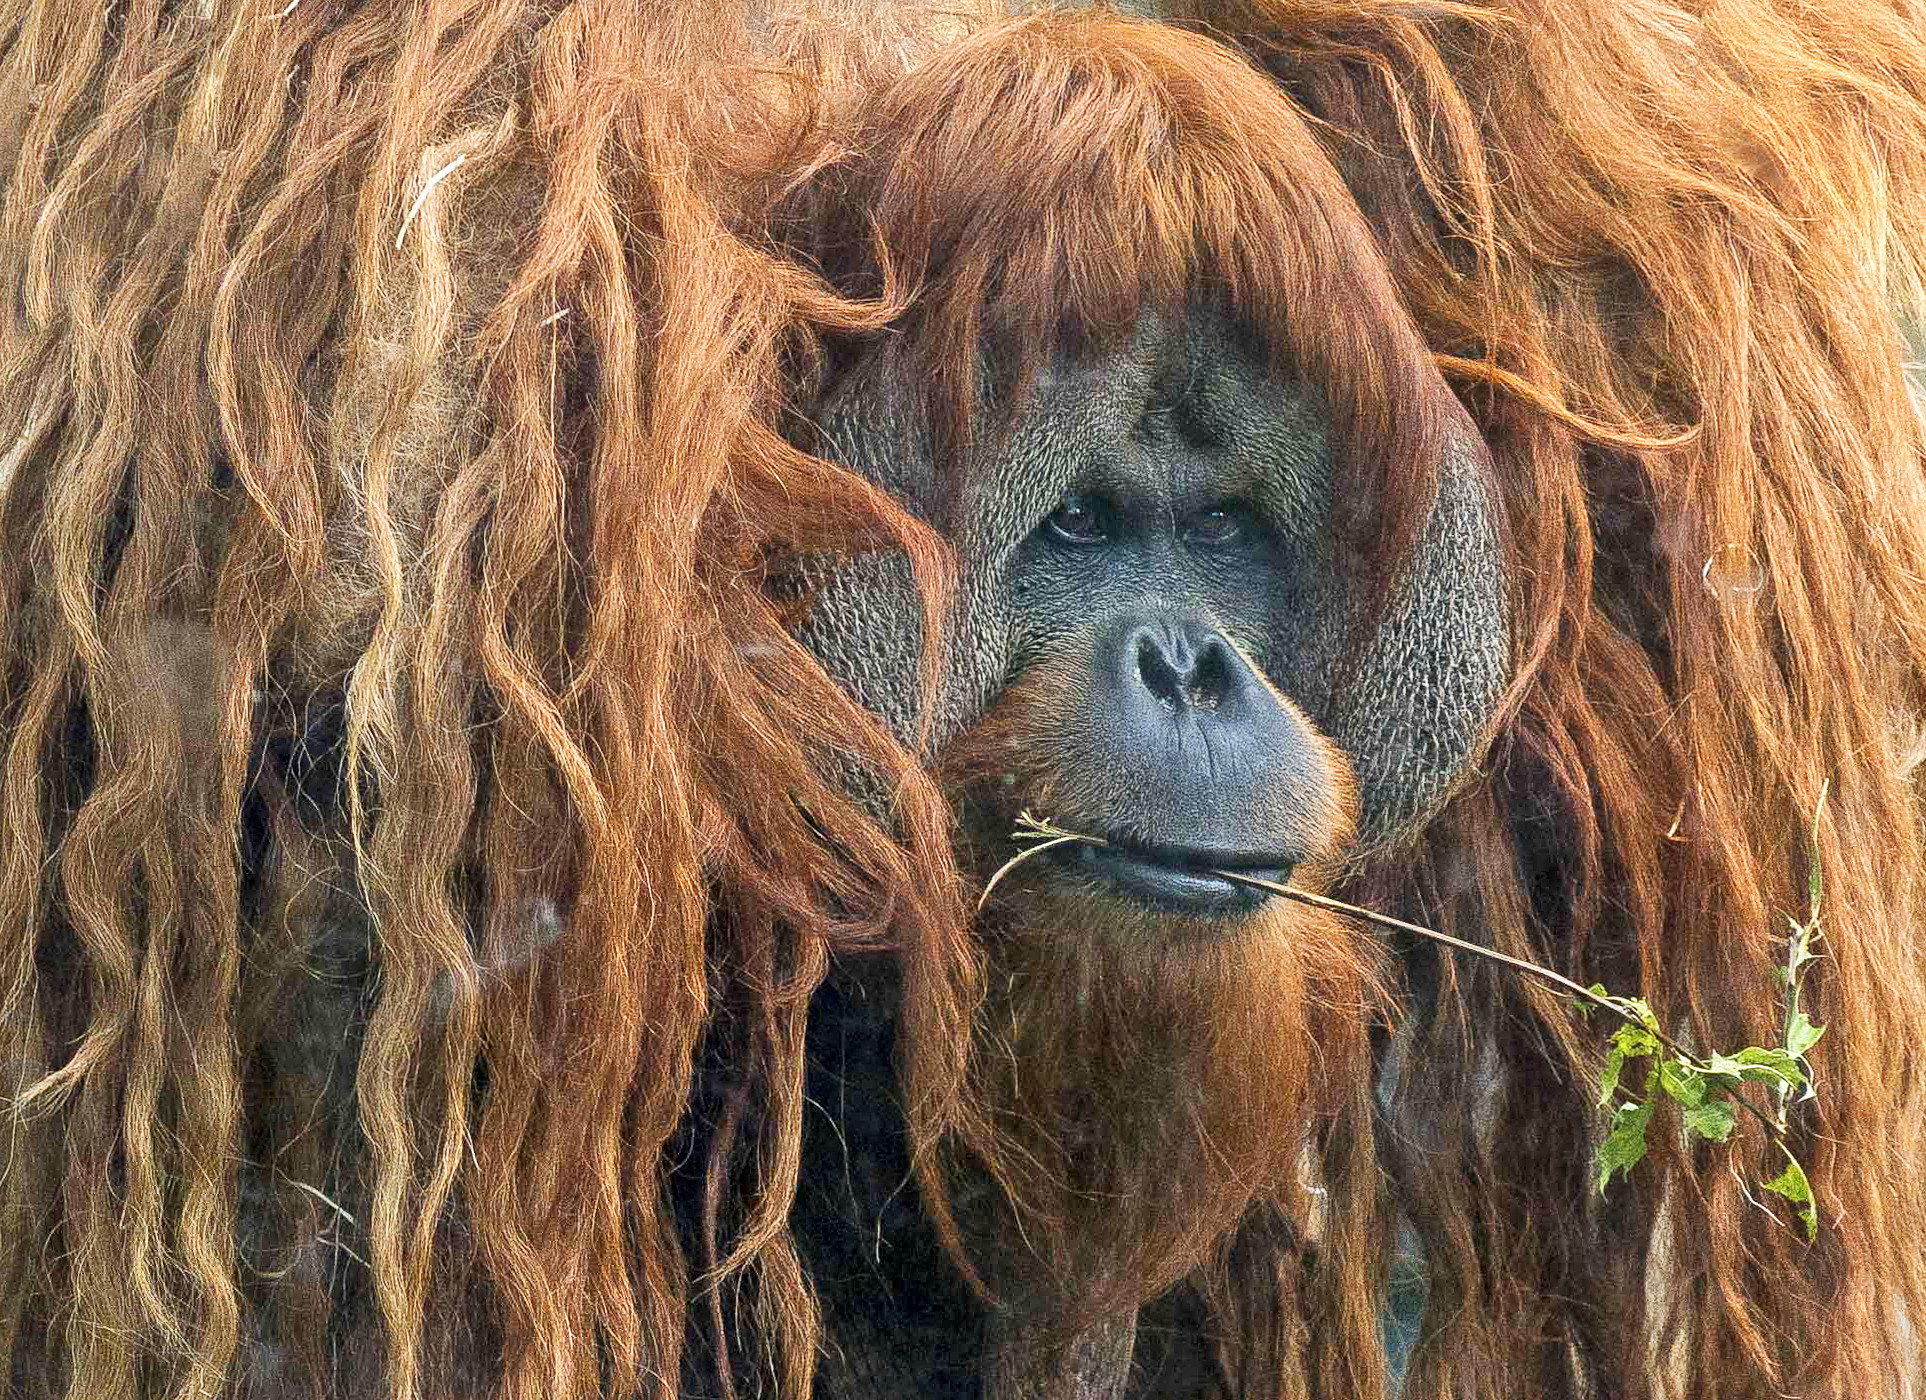 Ein männlicher Orang-Utan mit den charakteristischen Wangenwülsten eines dominanten Tieres